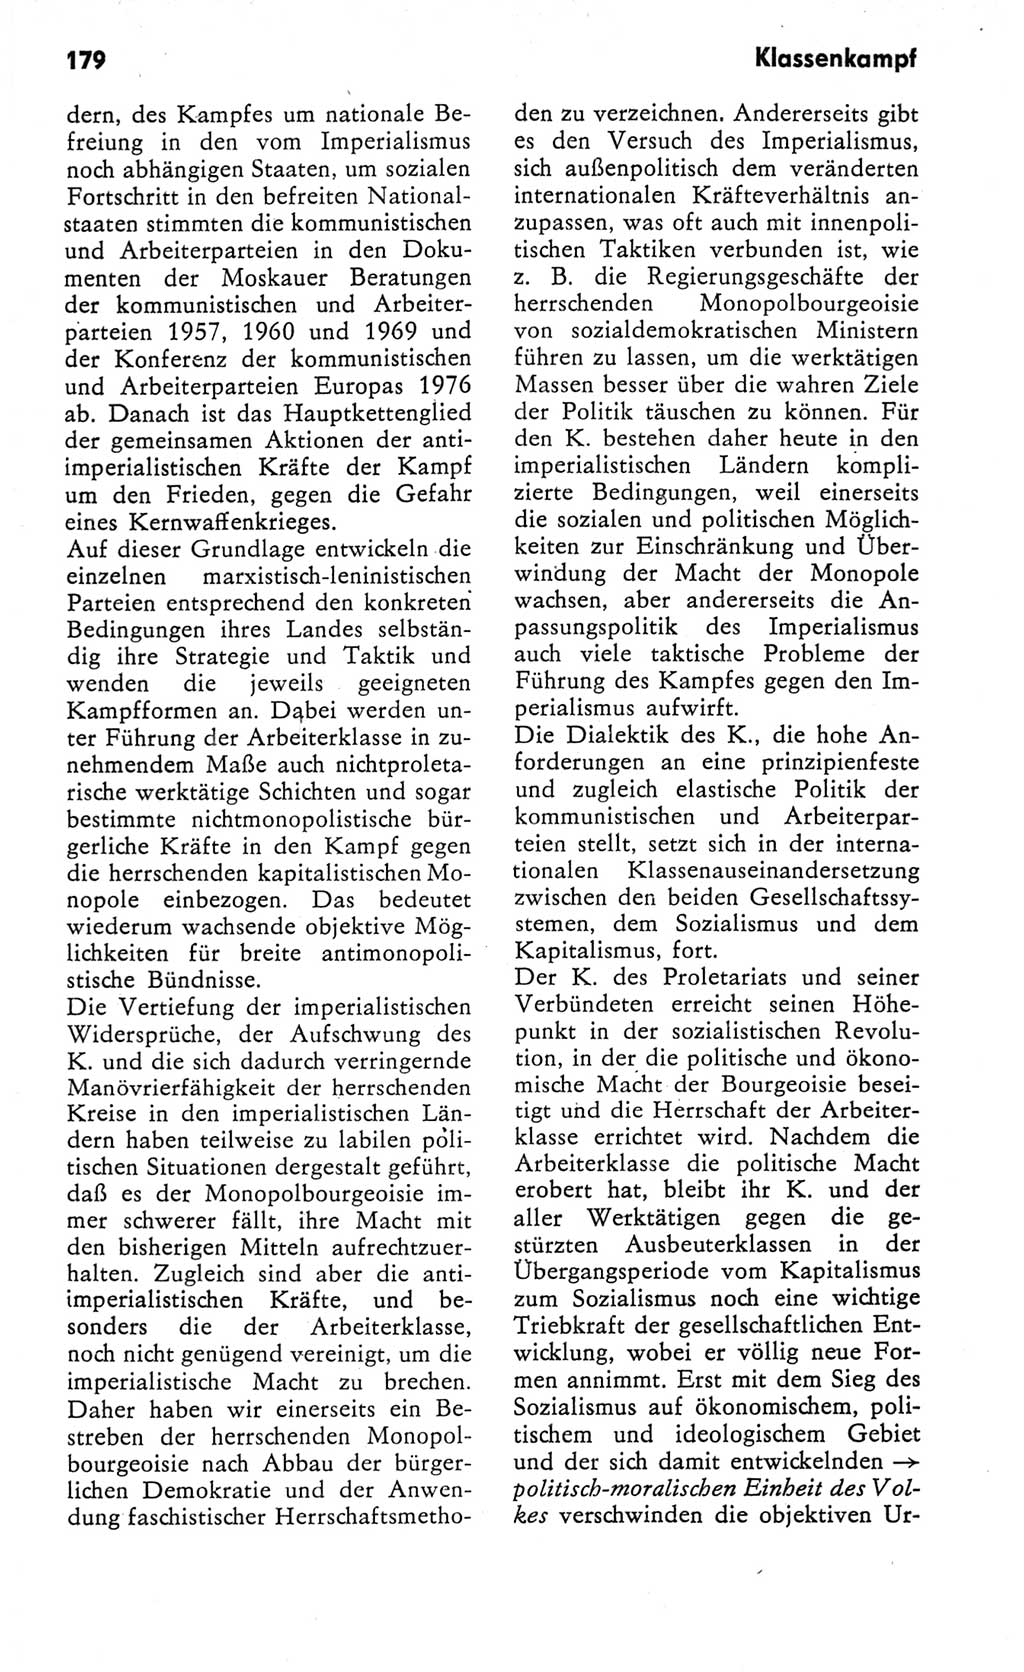 Kleines Wörterbuch der marxistisch-leninistischen Philosophie [Deutsche Demokratische Republik (DDR)] 1982, Seite 179 (Kl. Wb. ML Phil. DDR 1982, S. 179)